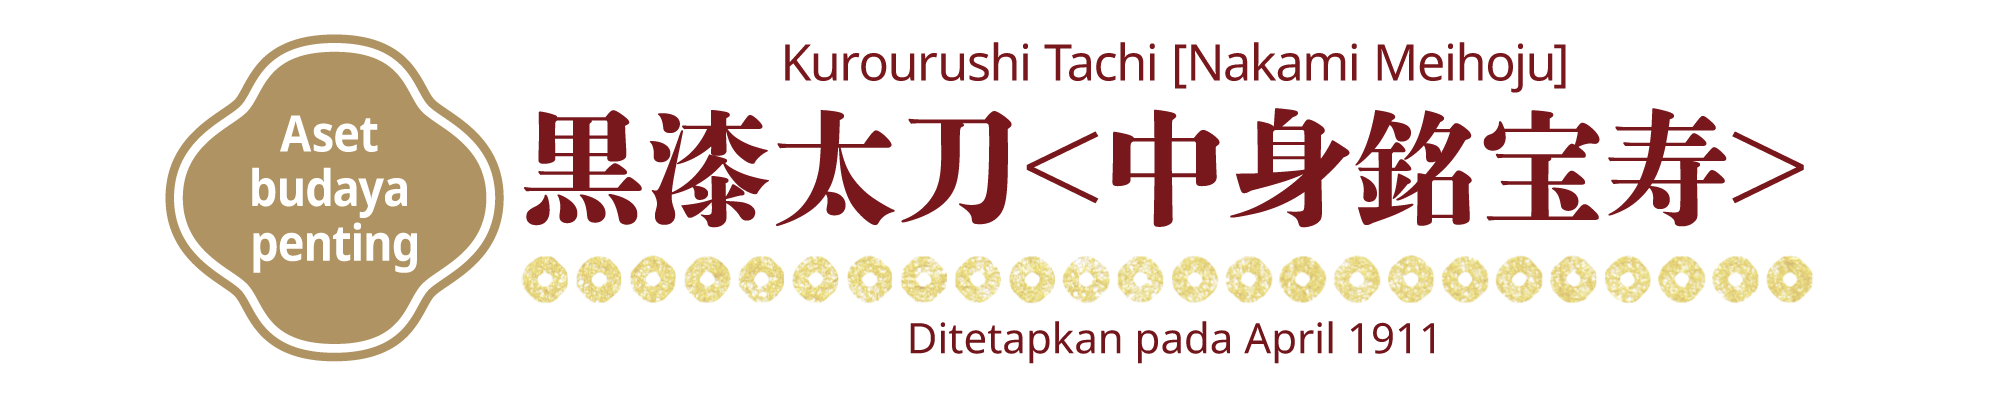 [Aset budaya penting]Kurourushi Tachi [Nakami Meihoju], Ditetapkan pada April 1911